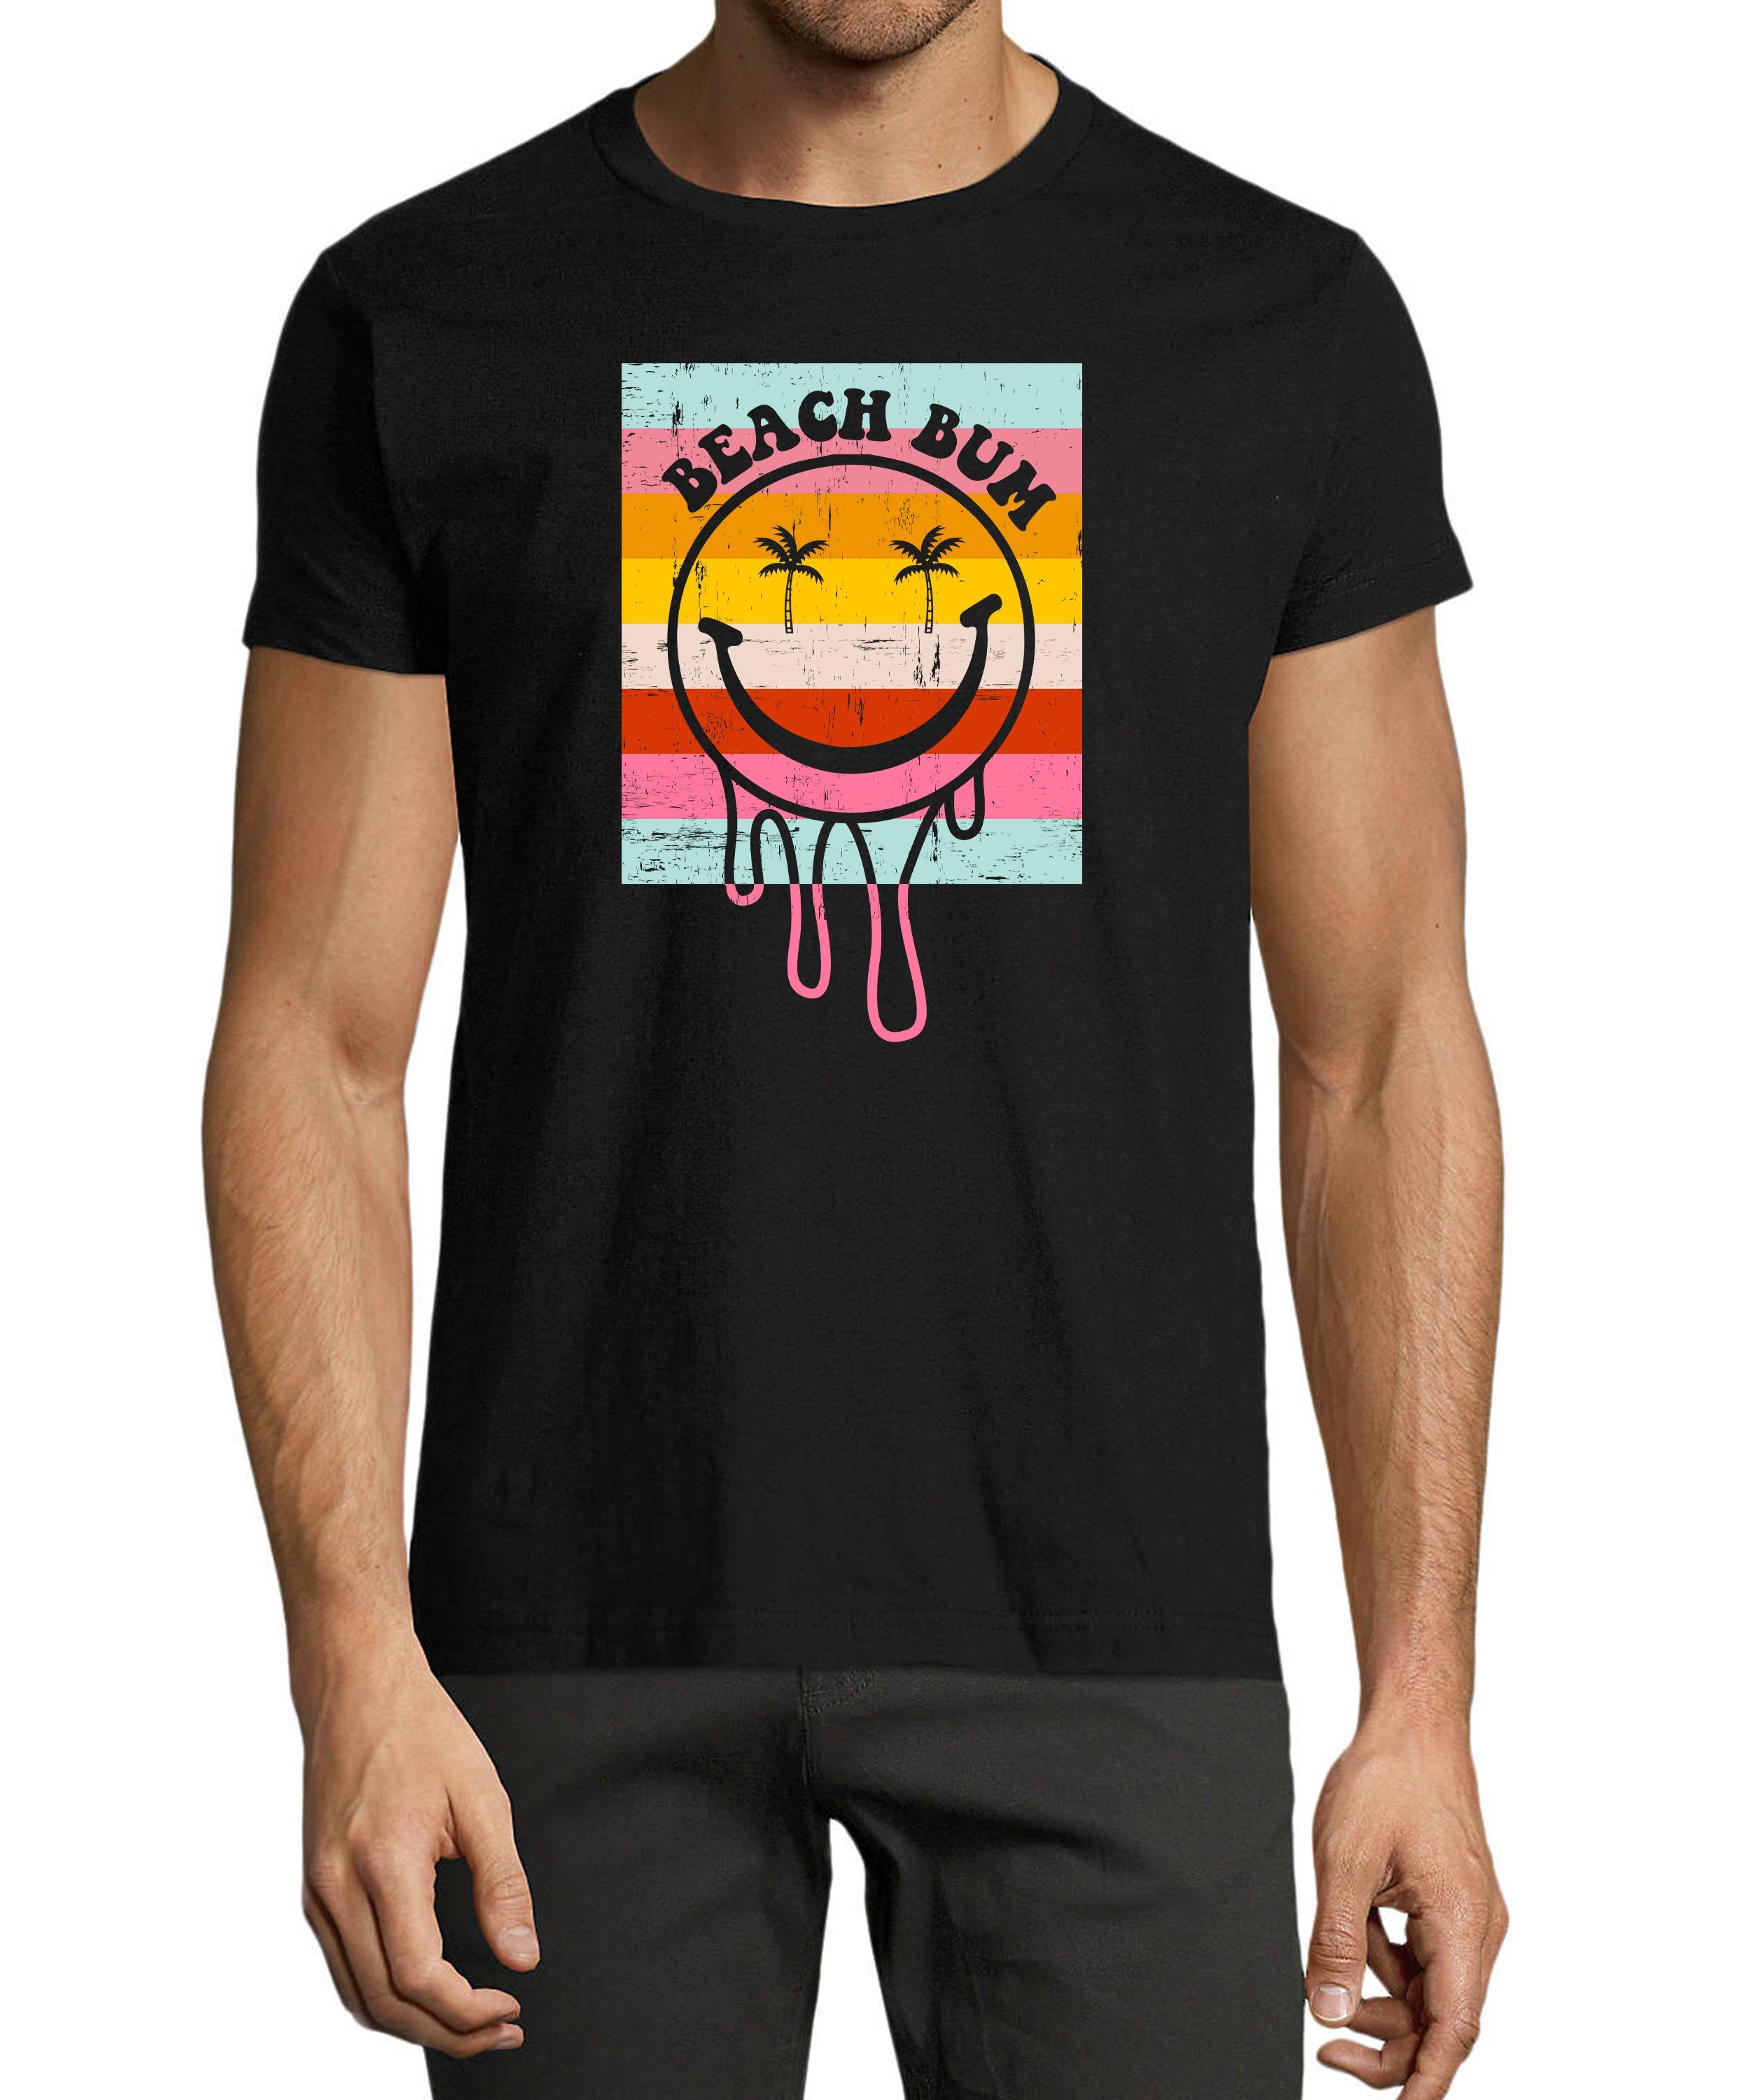 MyDesign24 T-Shirt Herren Smiley Print Shirt - Bunter Beach Bum Smiley Baumwollshirt mit Aufdruck Regular Fit, i291 schwarz